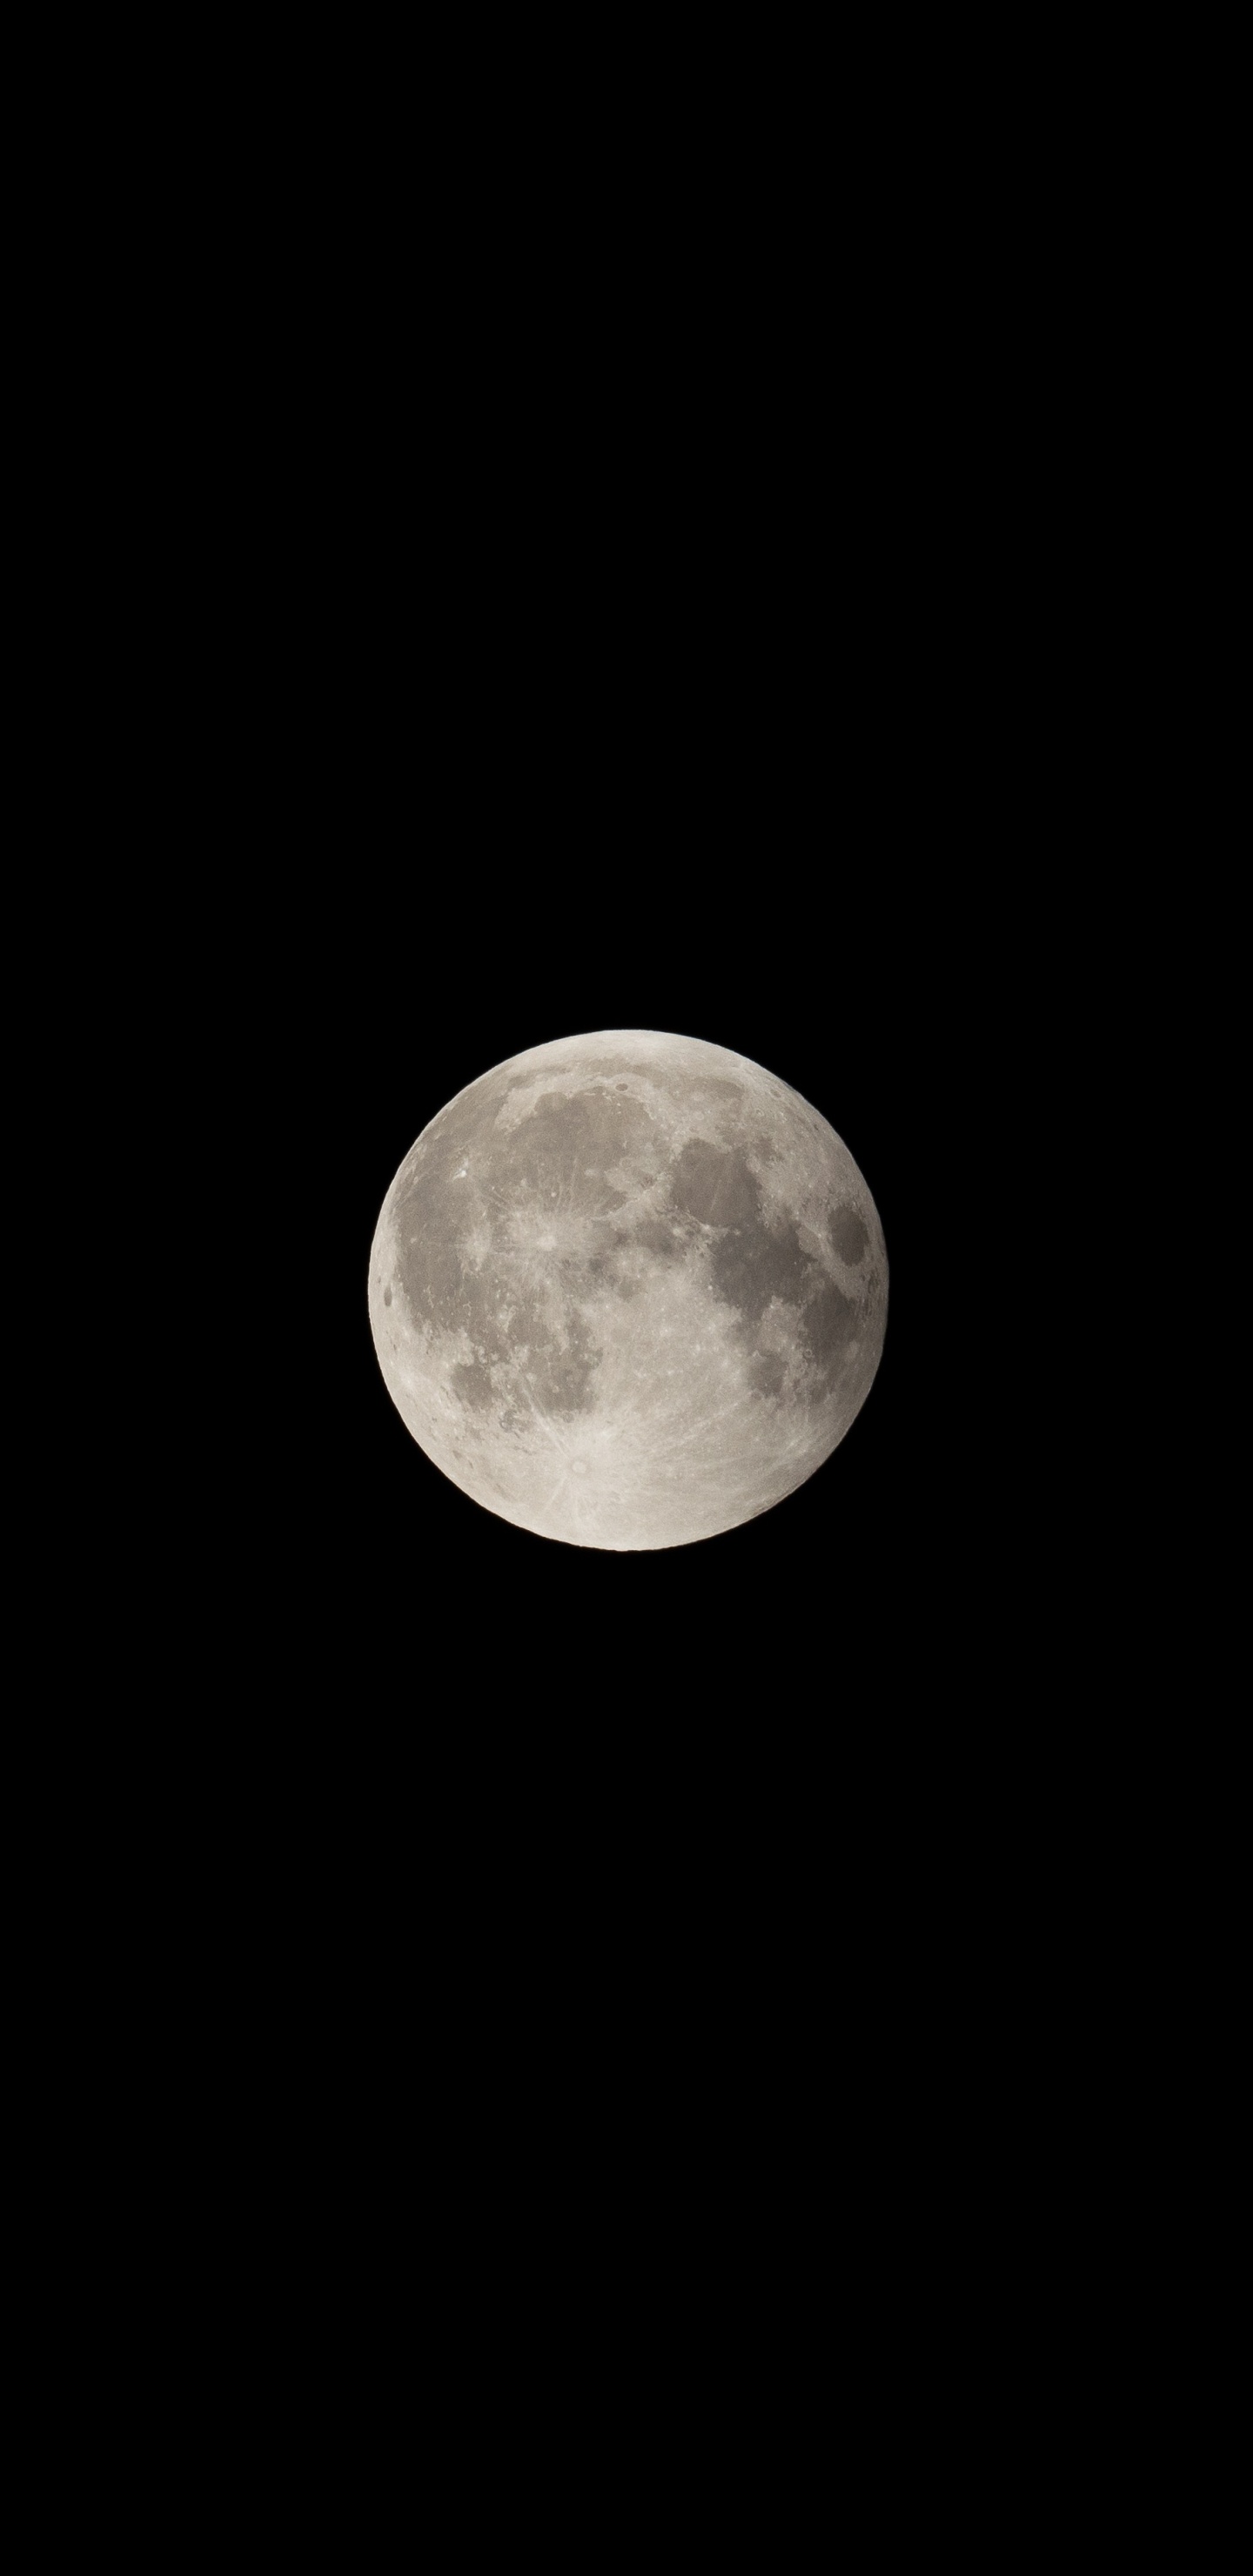 Full Moon in Dark Night Sky. Wallpaper in 1440x2960 Resolution